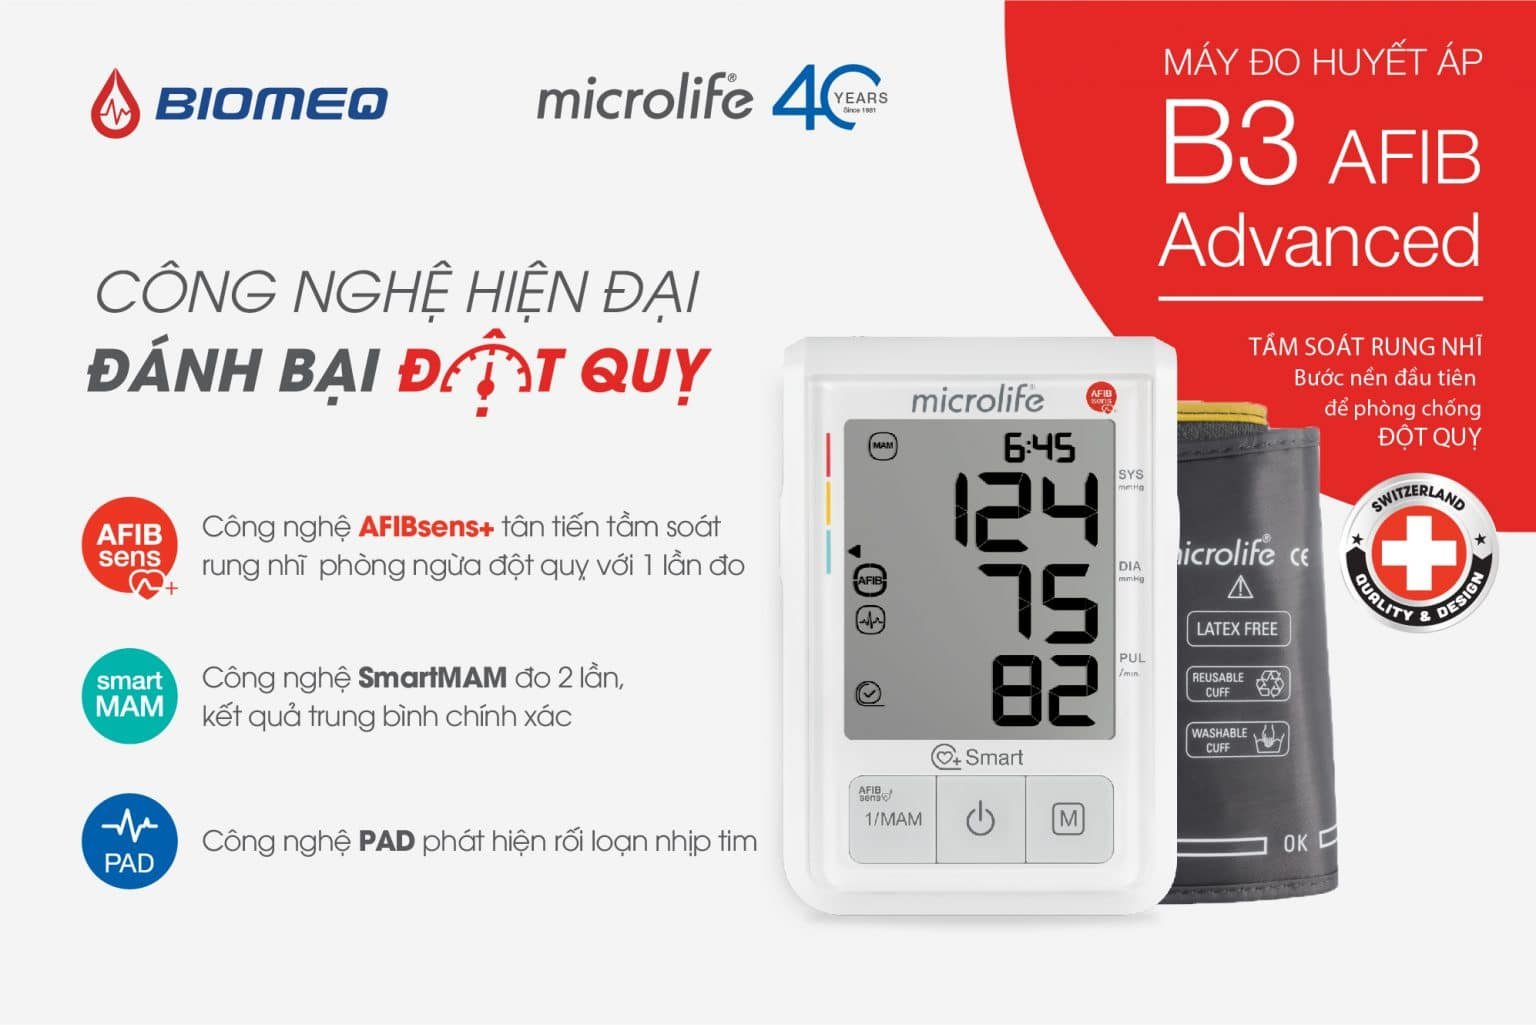 Máy đo huyết áp B3 AFIB Advanced với công nghệ hiện đại giúp cảnh báo đột quỵ